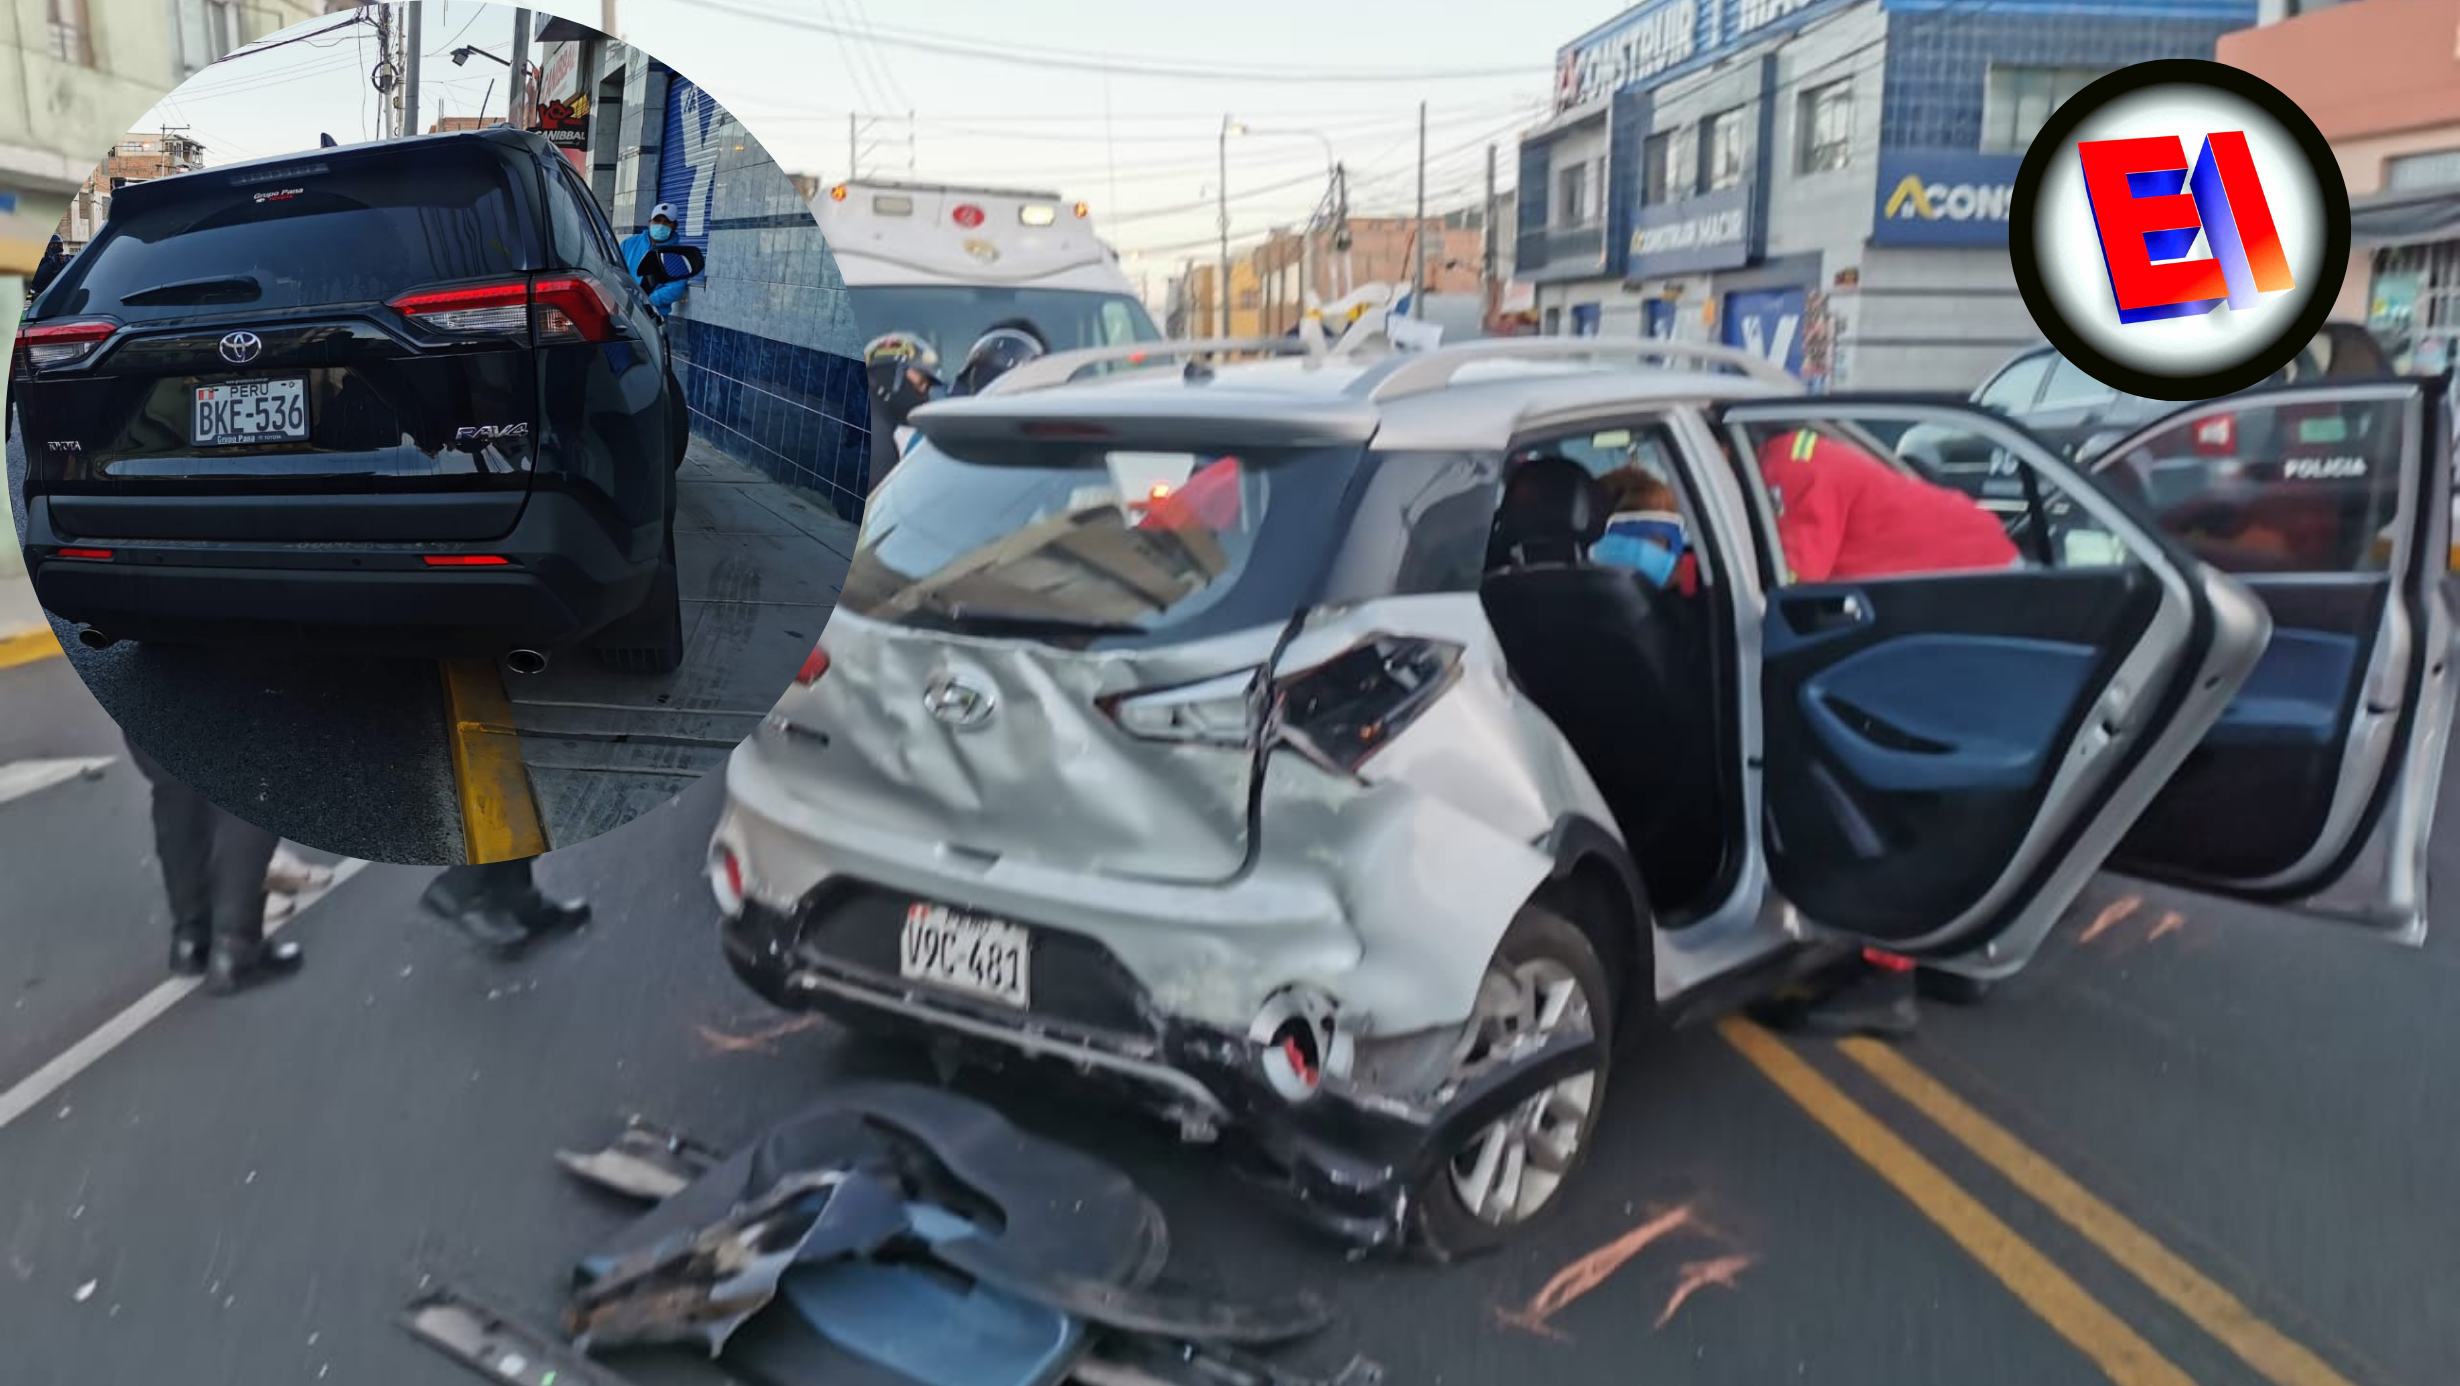 Fuerte accidente de tránsito ocurrido este lunes deja 3 personas heridas en el distrito de Miraflores